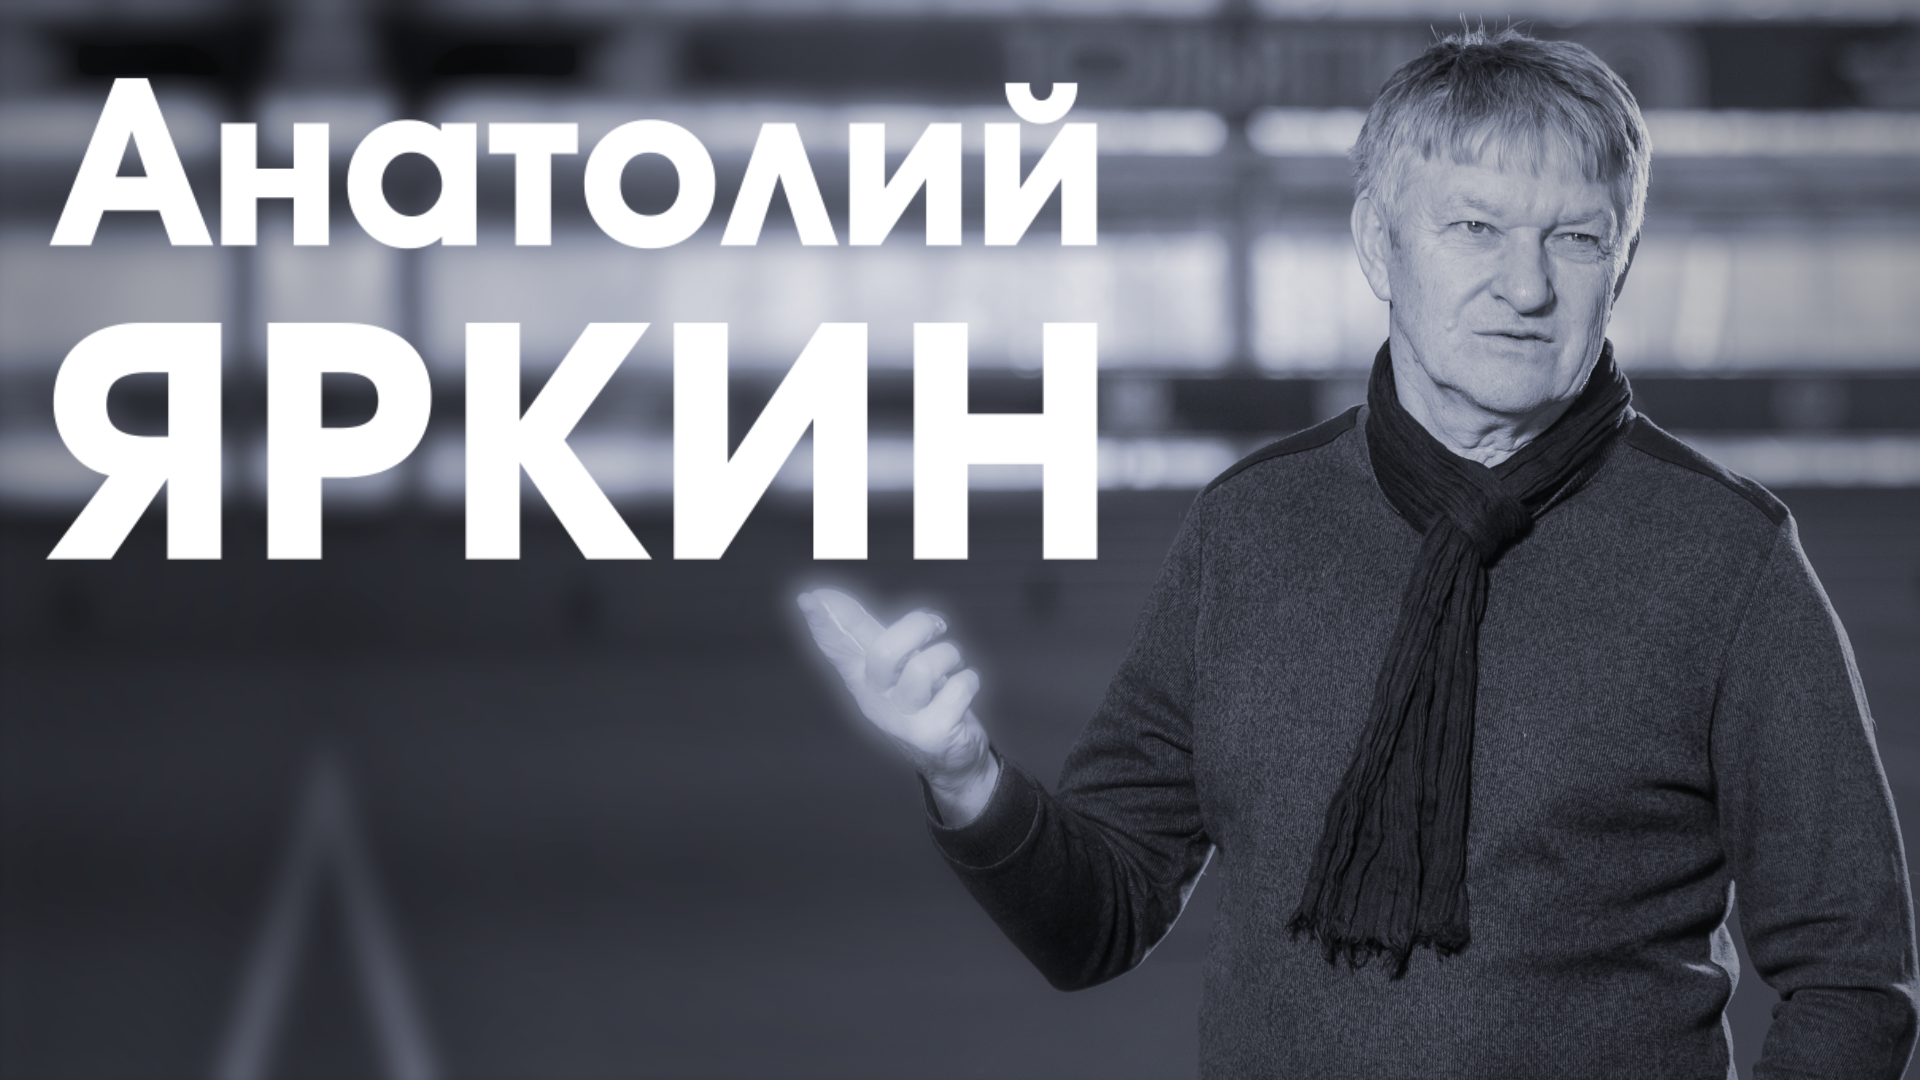 СпортЦентрТВ – Анатолий Яркин